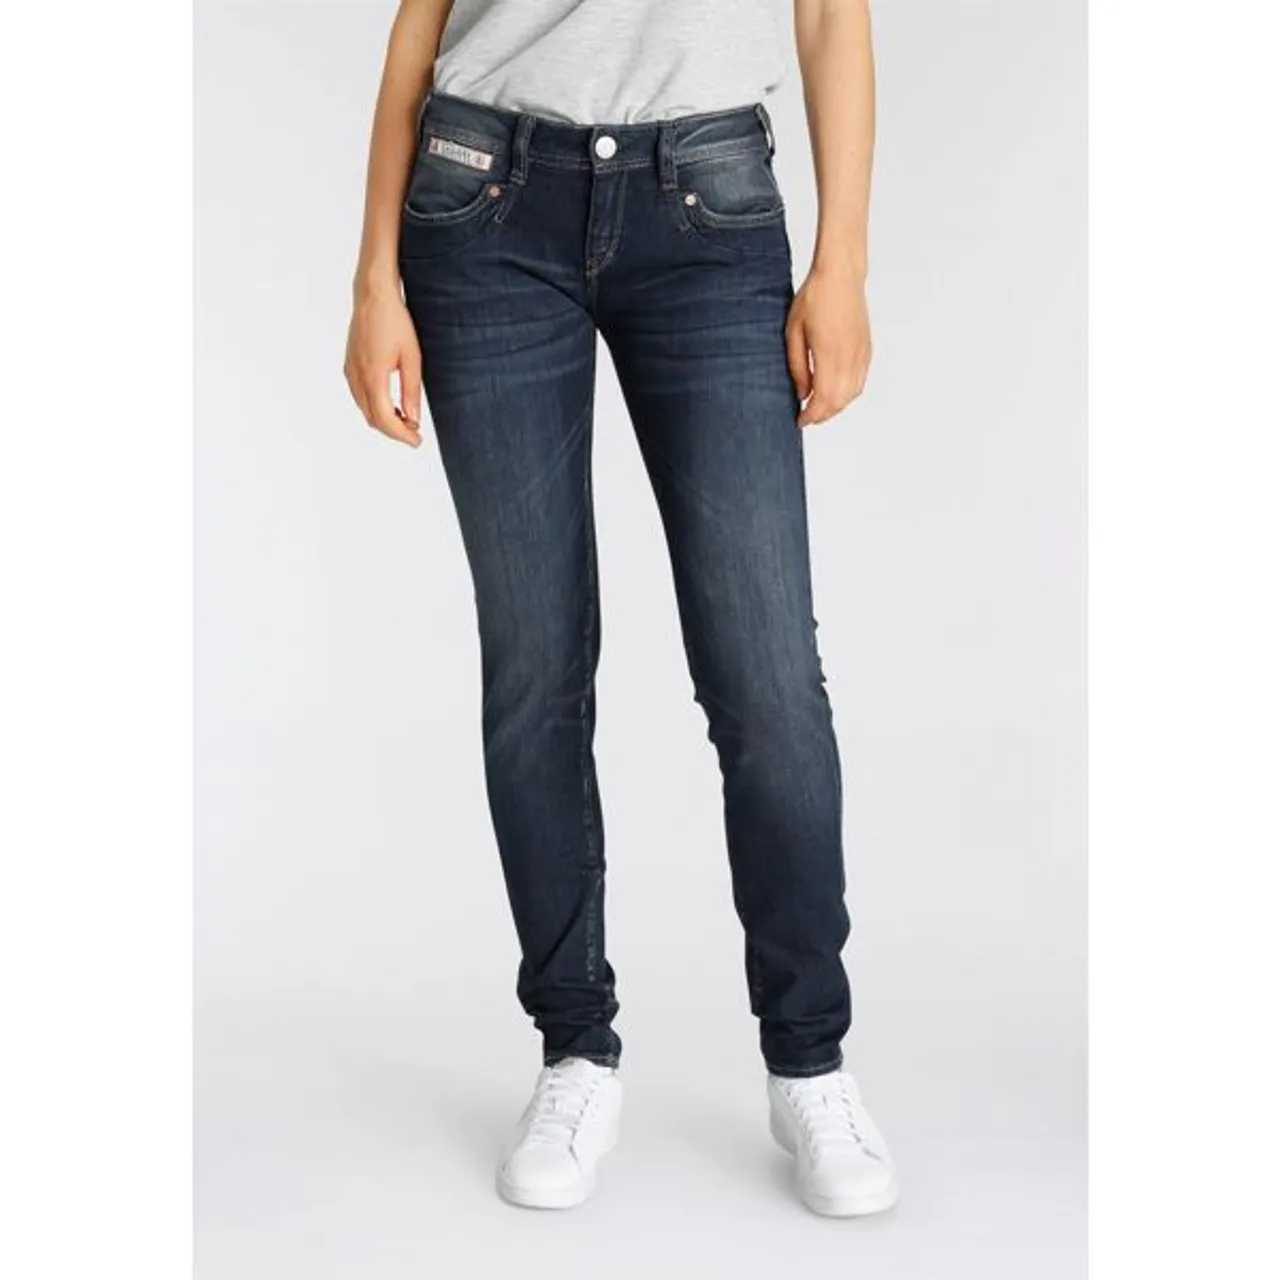 Slim-fit-Jeans HERRLICHER "PIPER" Gr. 25, Länge 30, blau (doom 93) Damen Jeans Röhrenjeans umweltfreundlich dank Kitotex Technologie